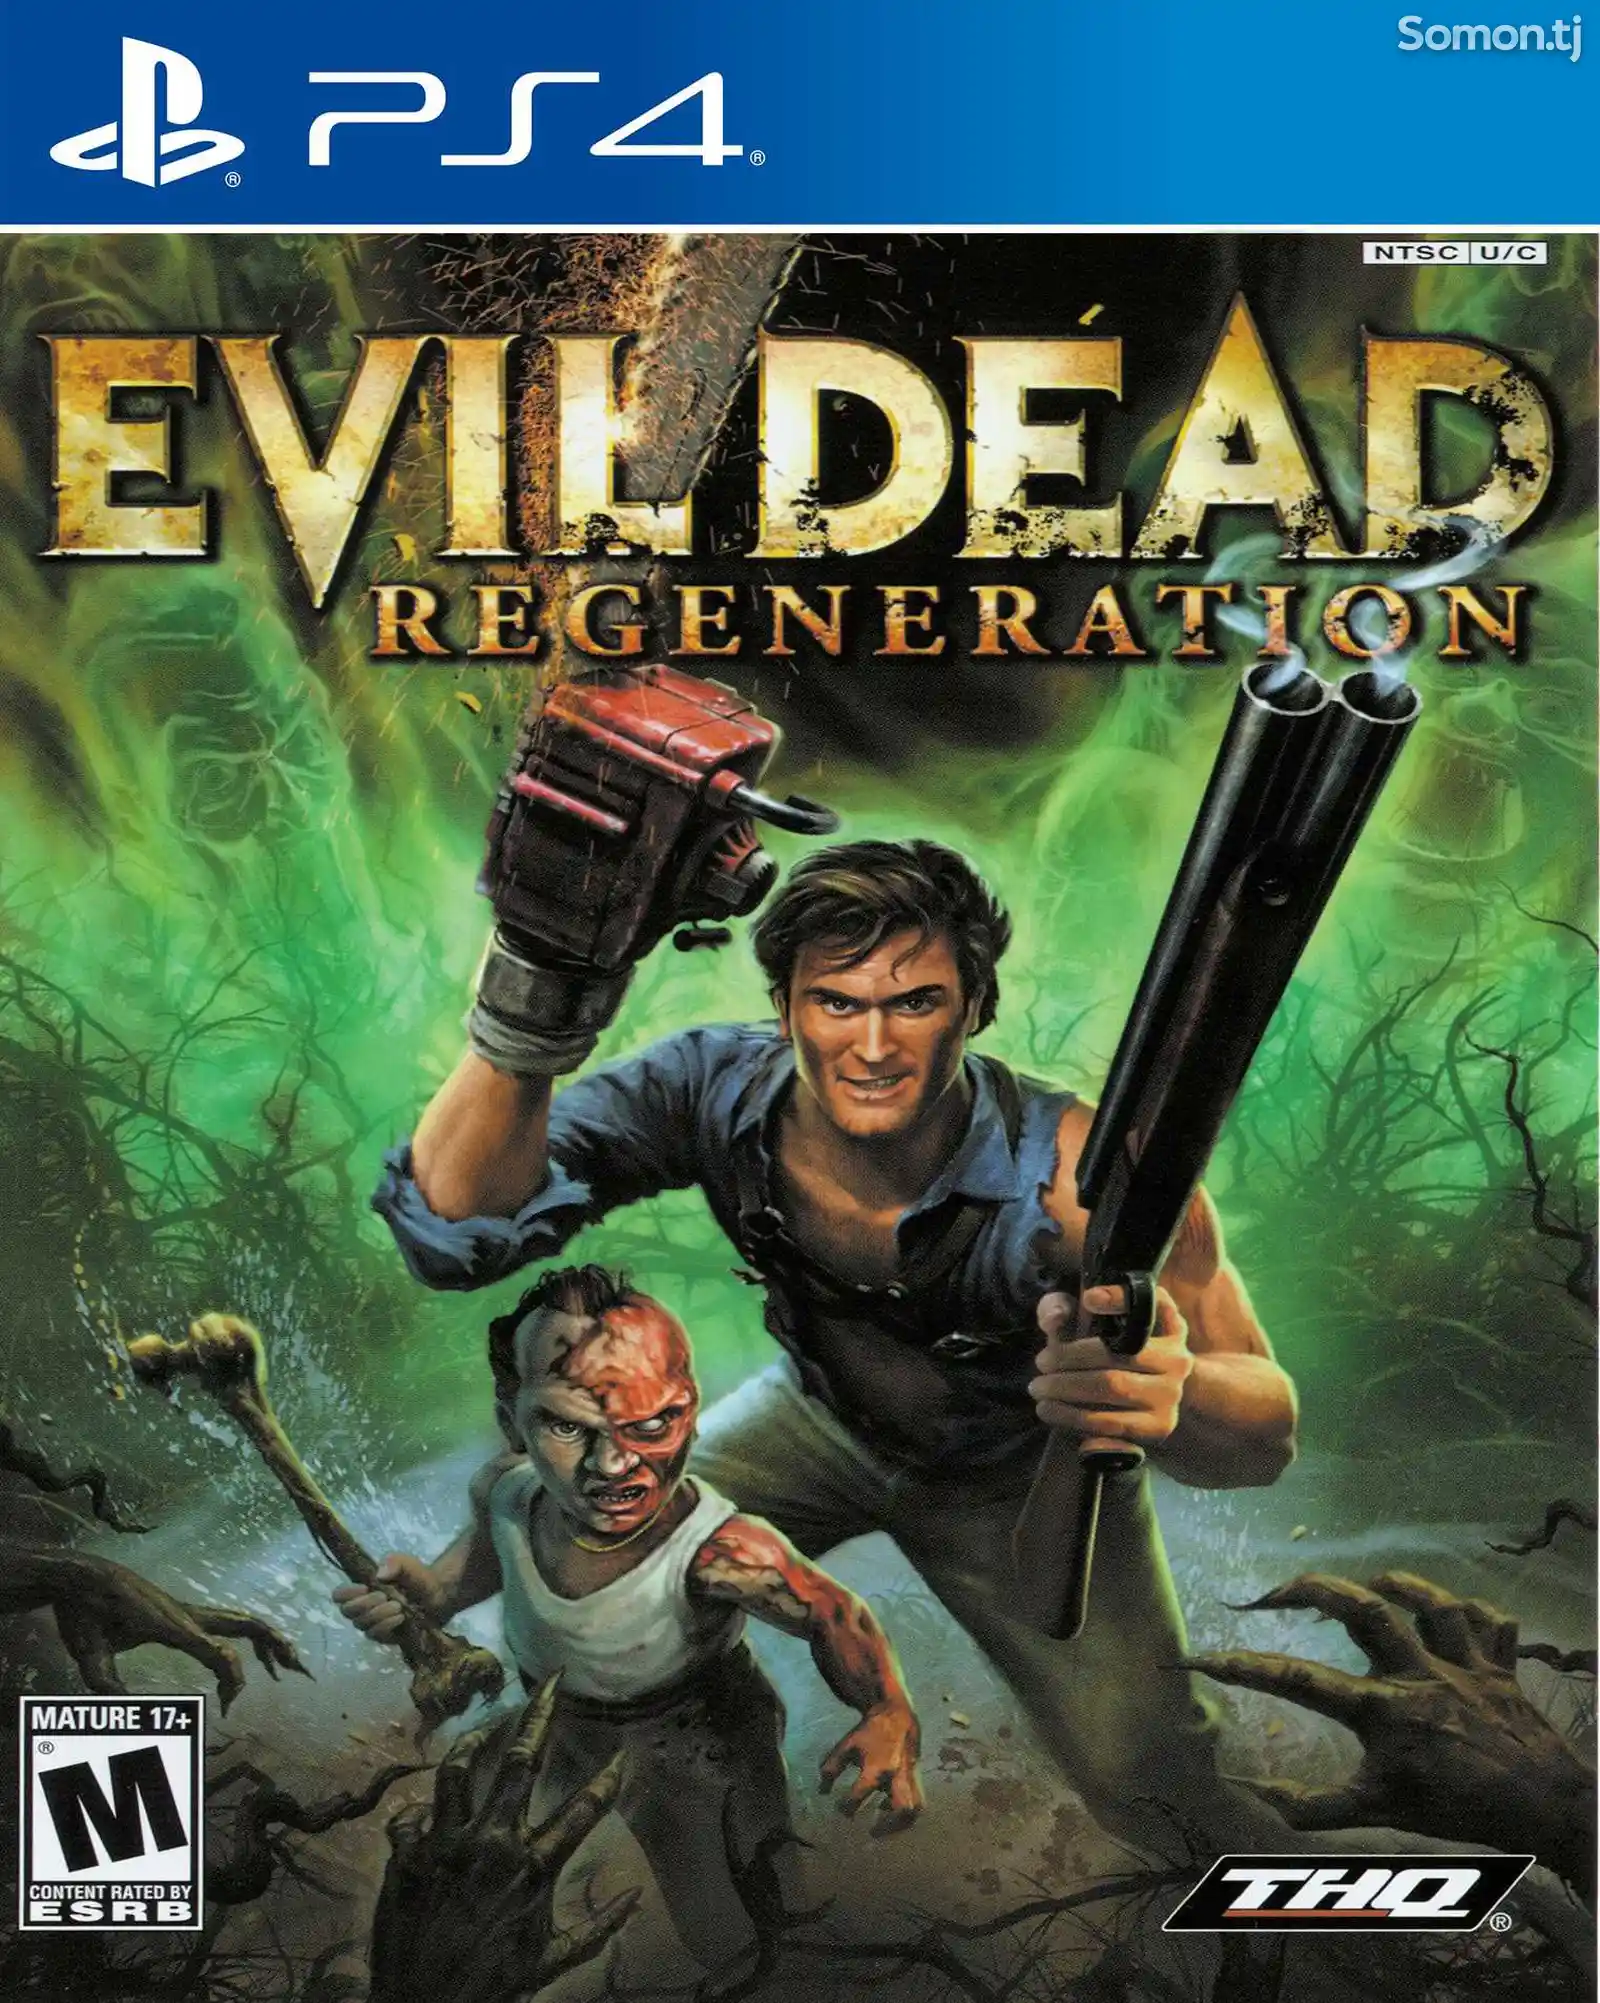 Игра Evil dead regeneration для PS-4 / 5.05 / 6.72 / 7.02 / 7.55 / 9.00 /-1